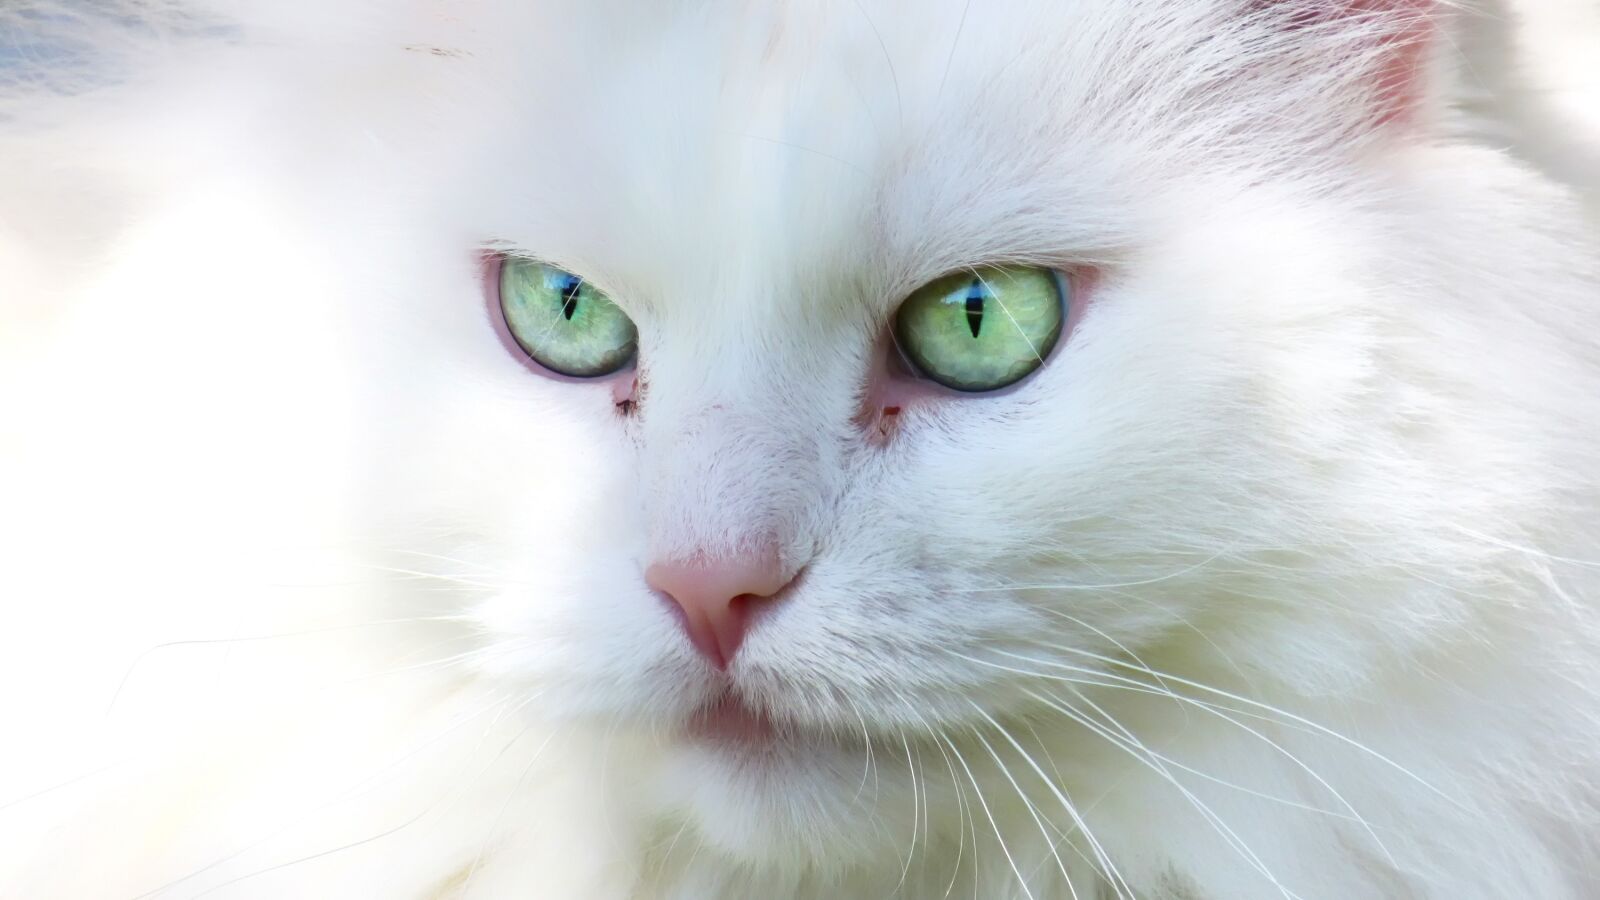 Canon PowerShot SX520 HS sample photo. Cat, feline, portrait photography